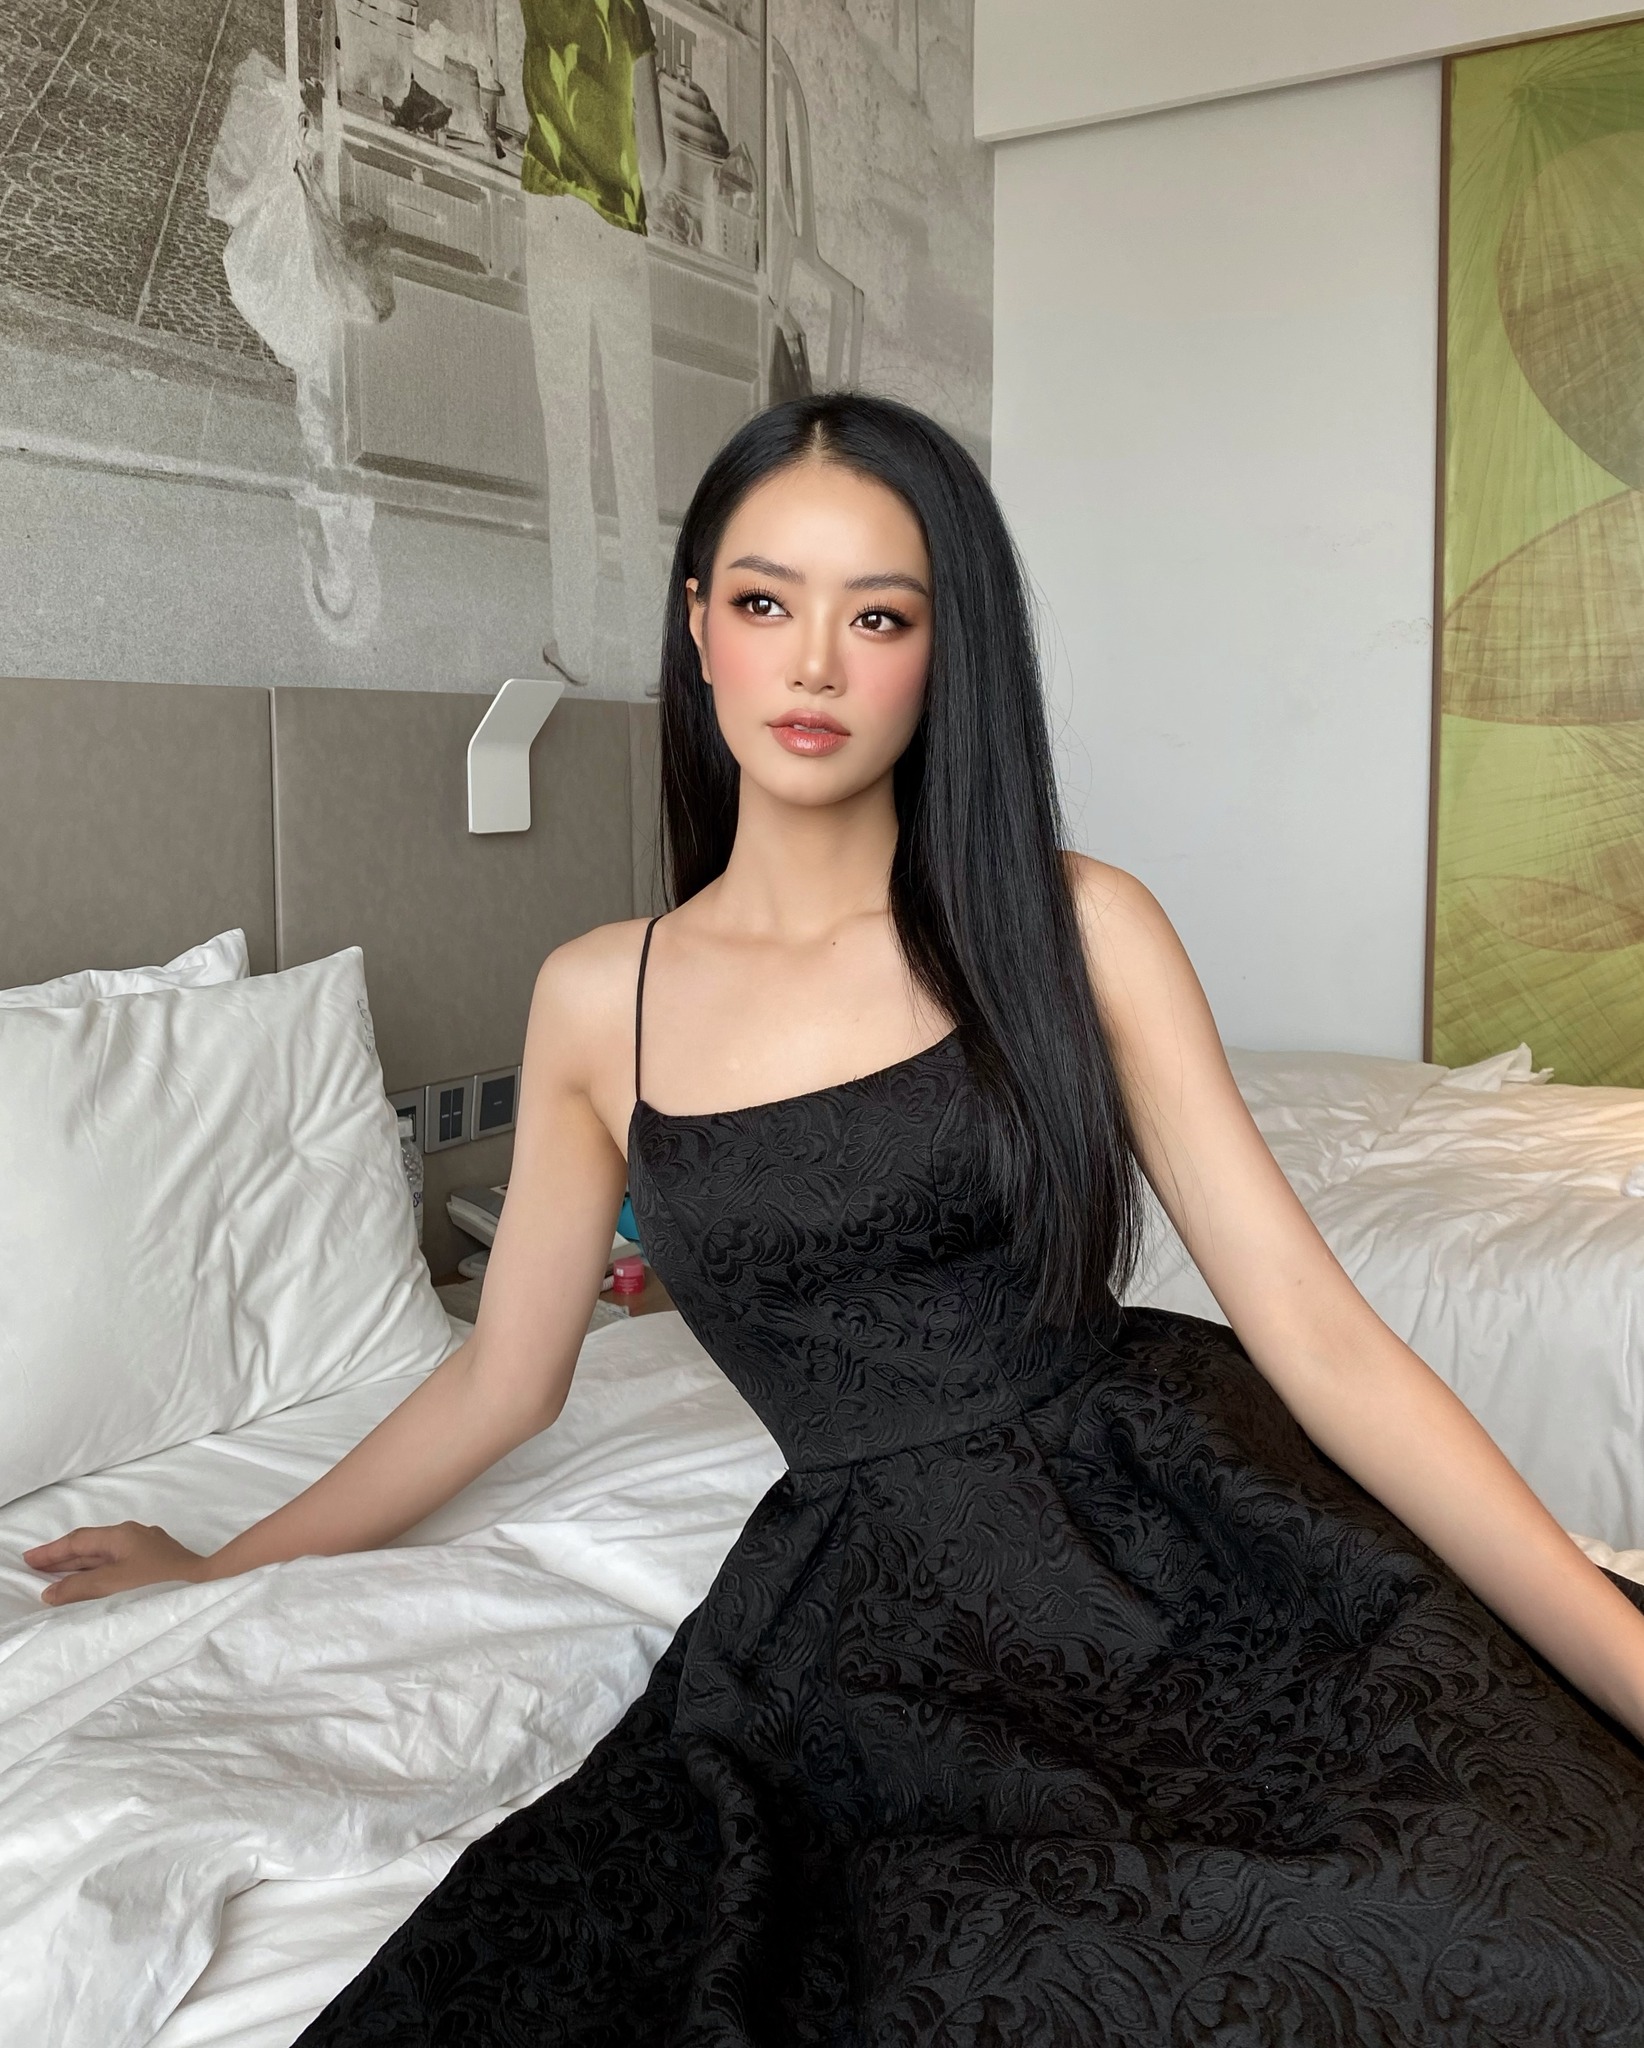 Á hậu 1 Bùi Khánh Linh (sinh năm 2002, đến từ Bắc Giang) lại mang vẻ đẹp ngọt ngào cũng phong cách nhẹ nhàng, thanh lịch.